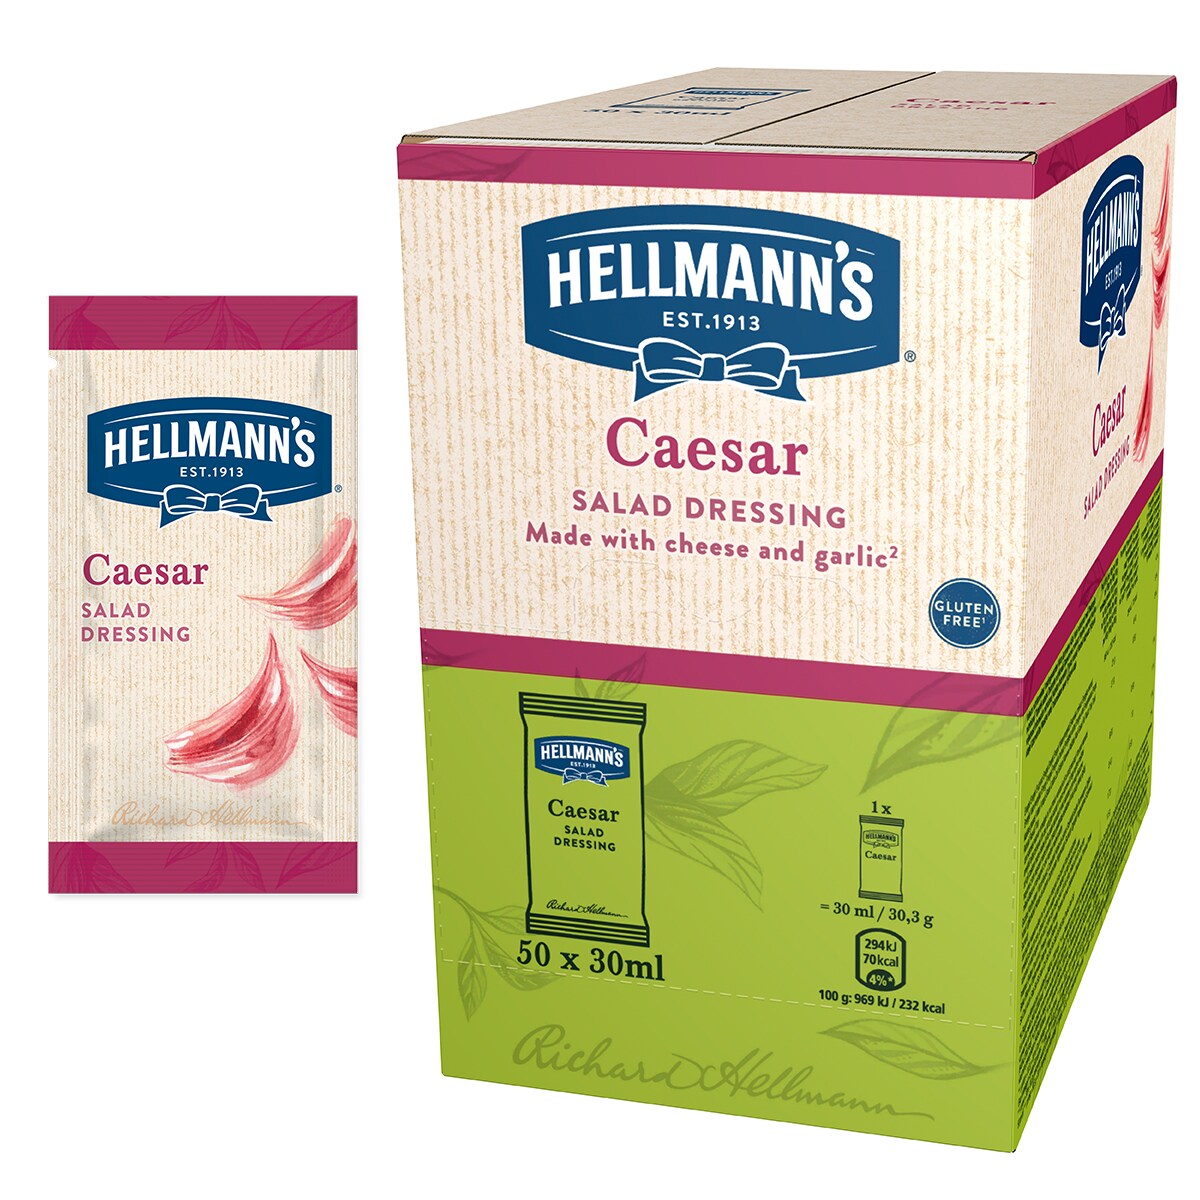 Hellmann's Салатен дресинг Цезар - доза 30 ml - "Имам нужда от готово решение за салатен дресинг в единична доза, с качество, на което мога да разчитам и което бързо би се добавило към салата за доставка"